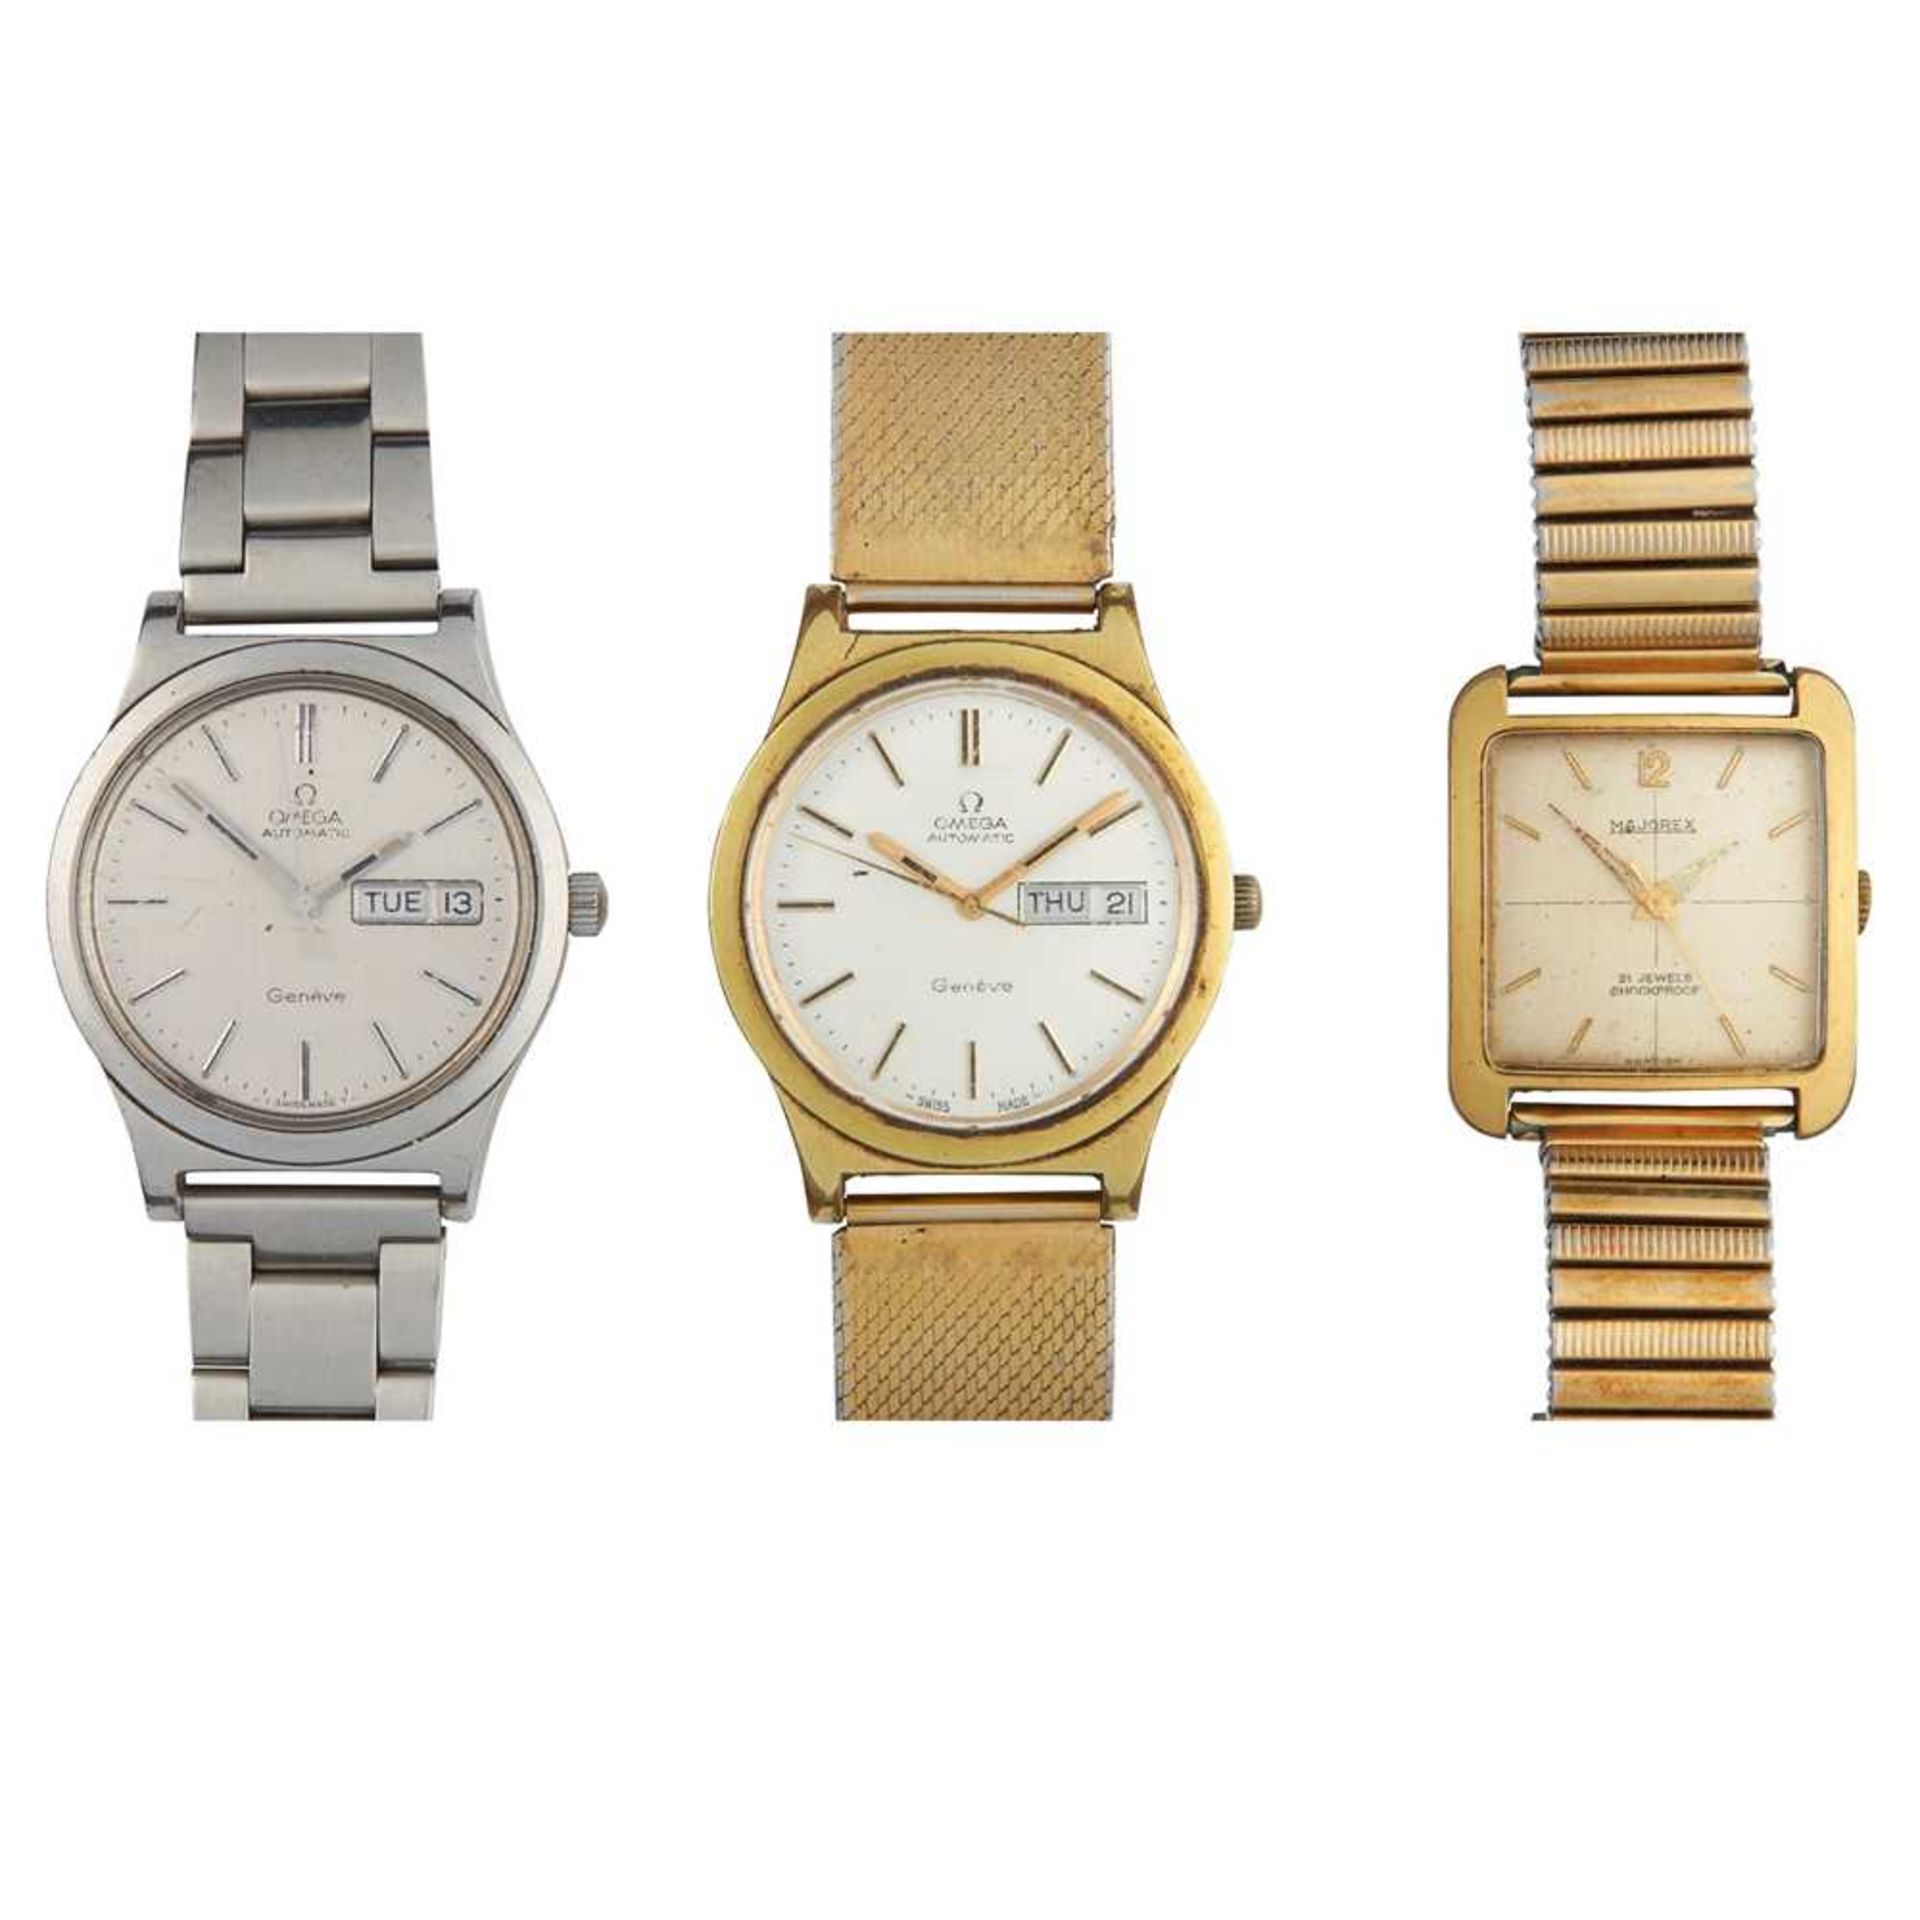 Three gentleman's wrist watches